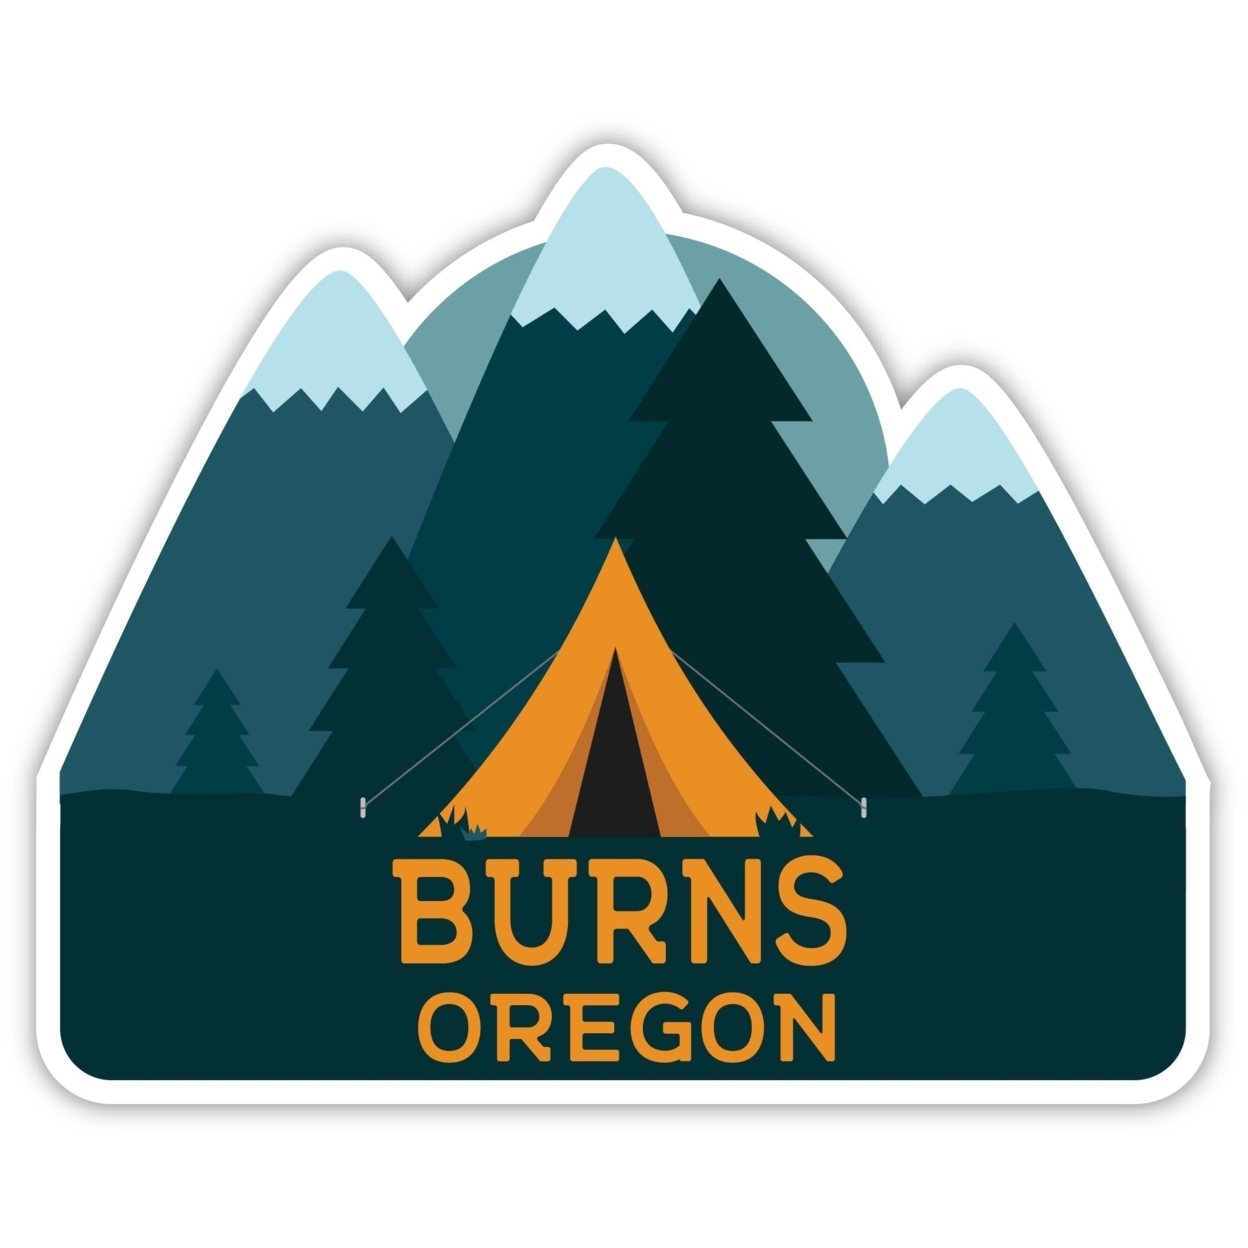 Burns Oregon Souvenir Decorative Stickers (Choose Theme And Size) - Single Unit, 2-Inch, Tent